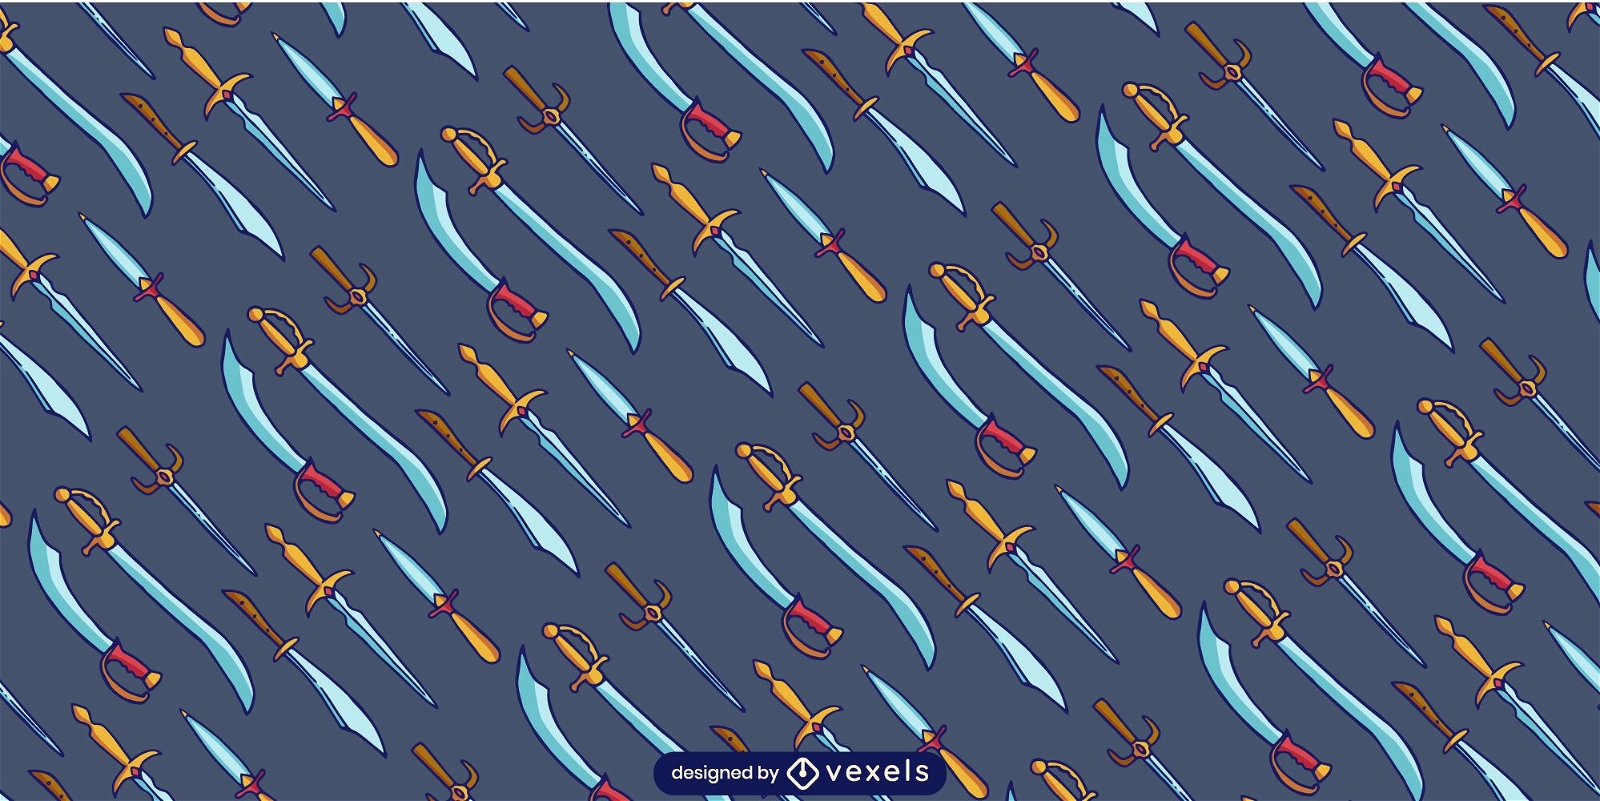 Sword weapon warrior pattern design